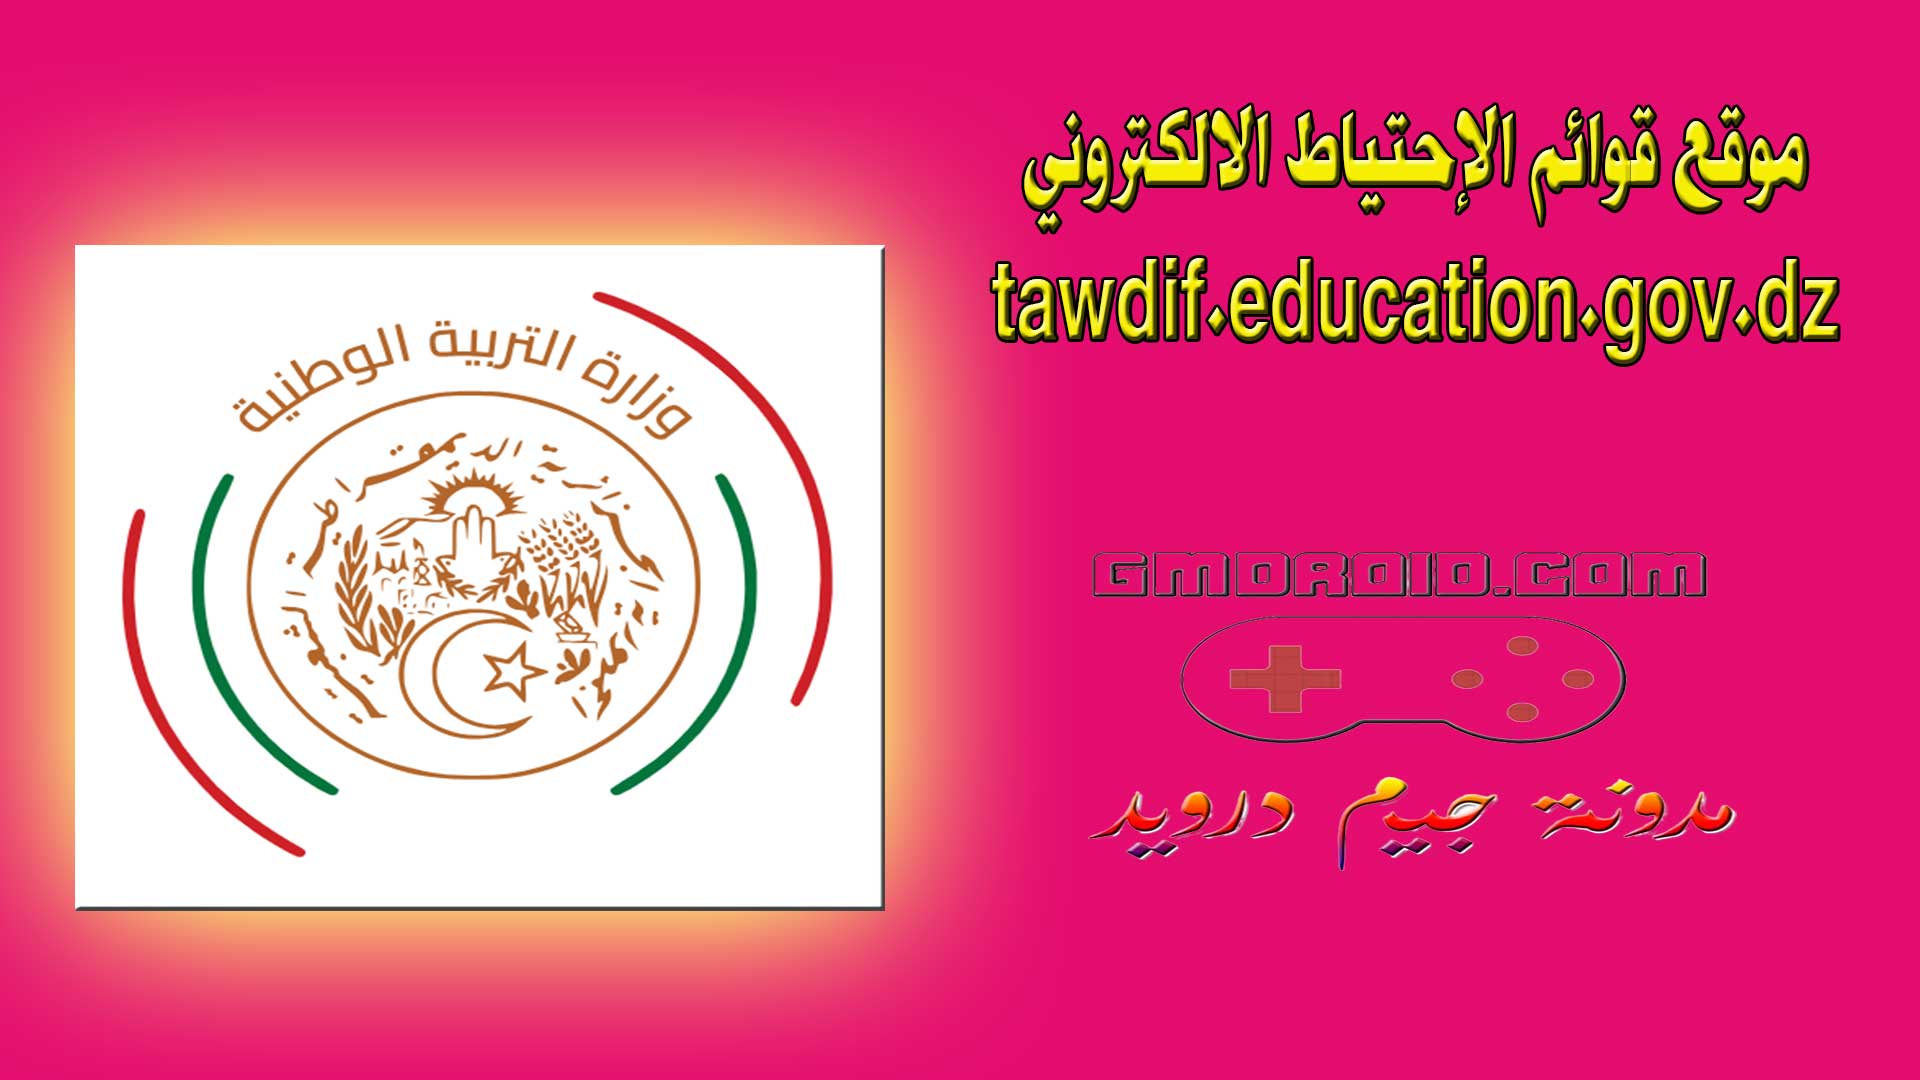 موقع قوائم الإحتياط الالكتروني - tawdif.education.gov.dz - متابعة حالة الملف